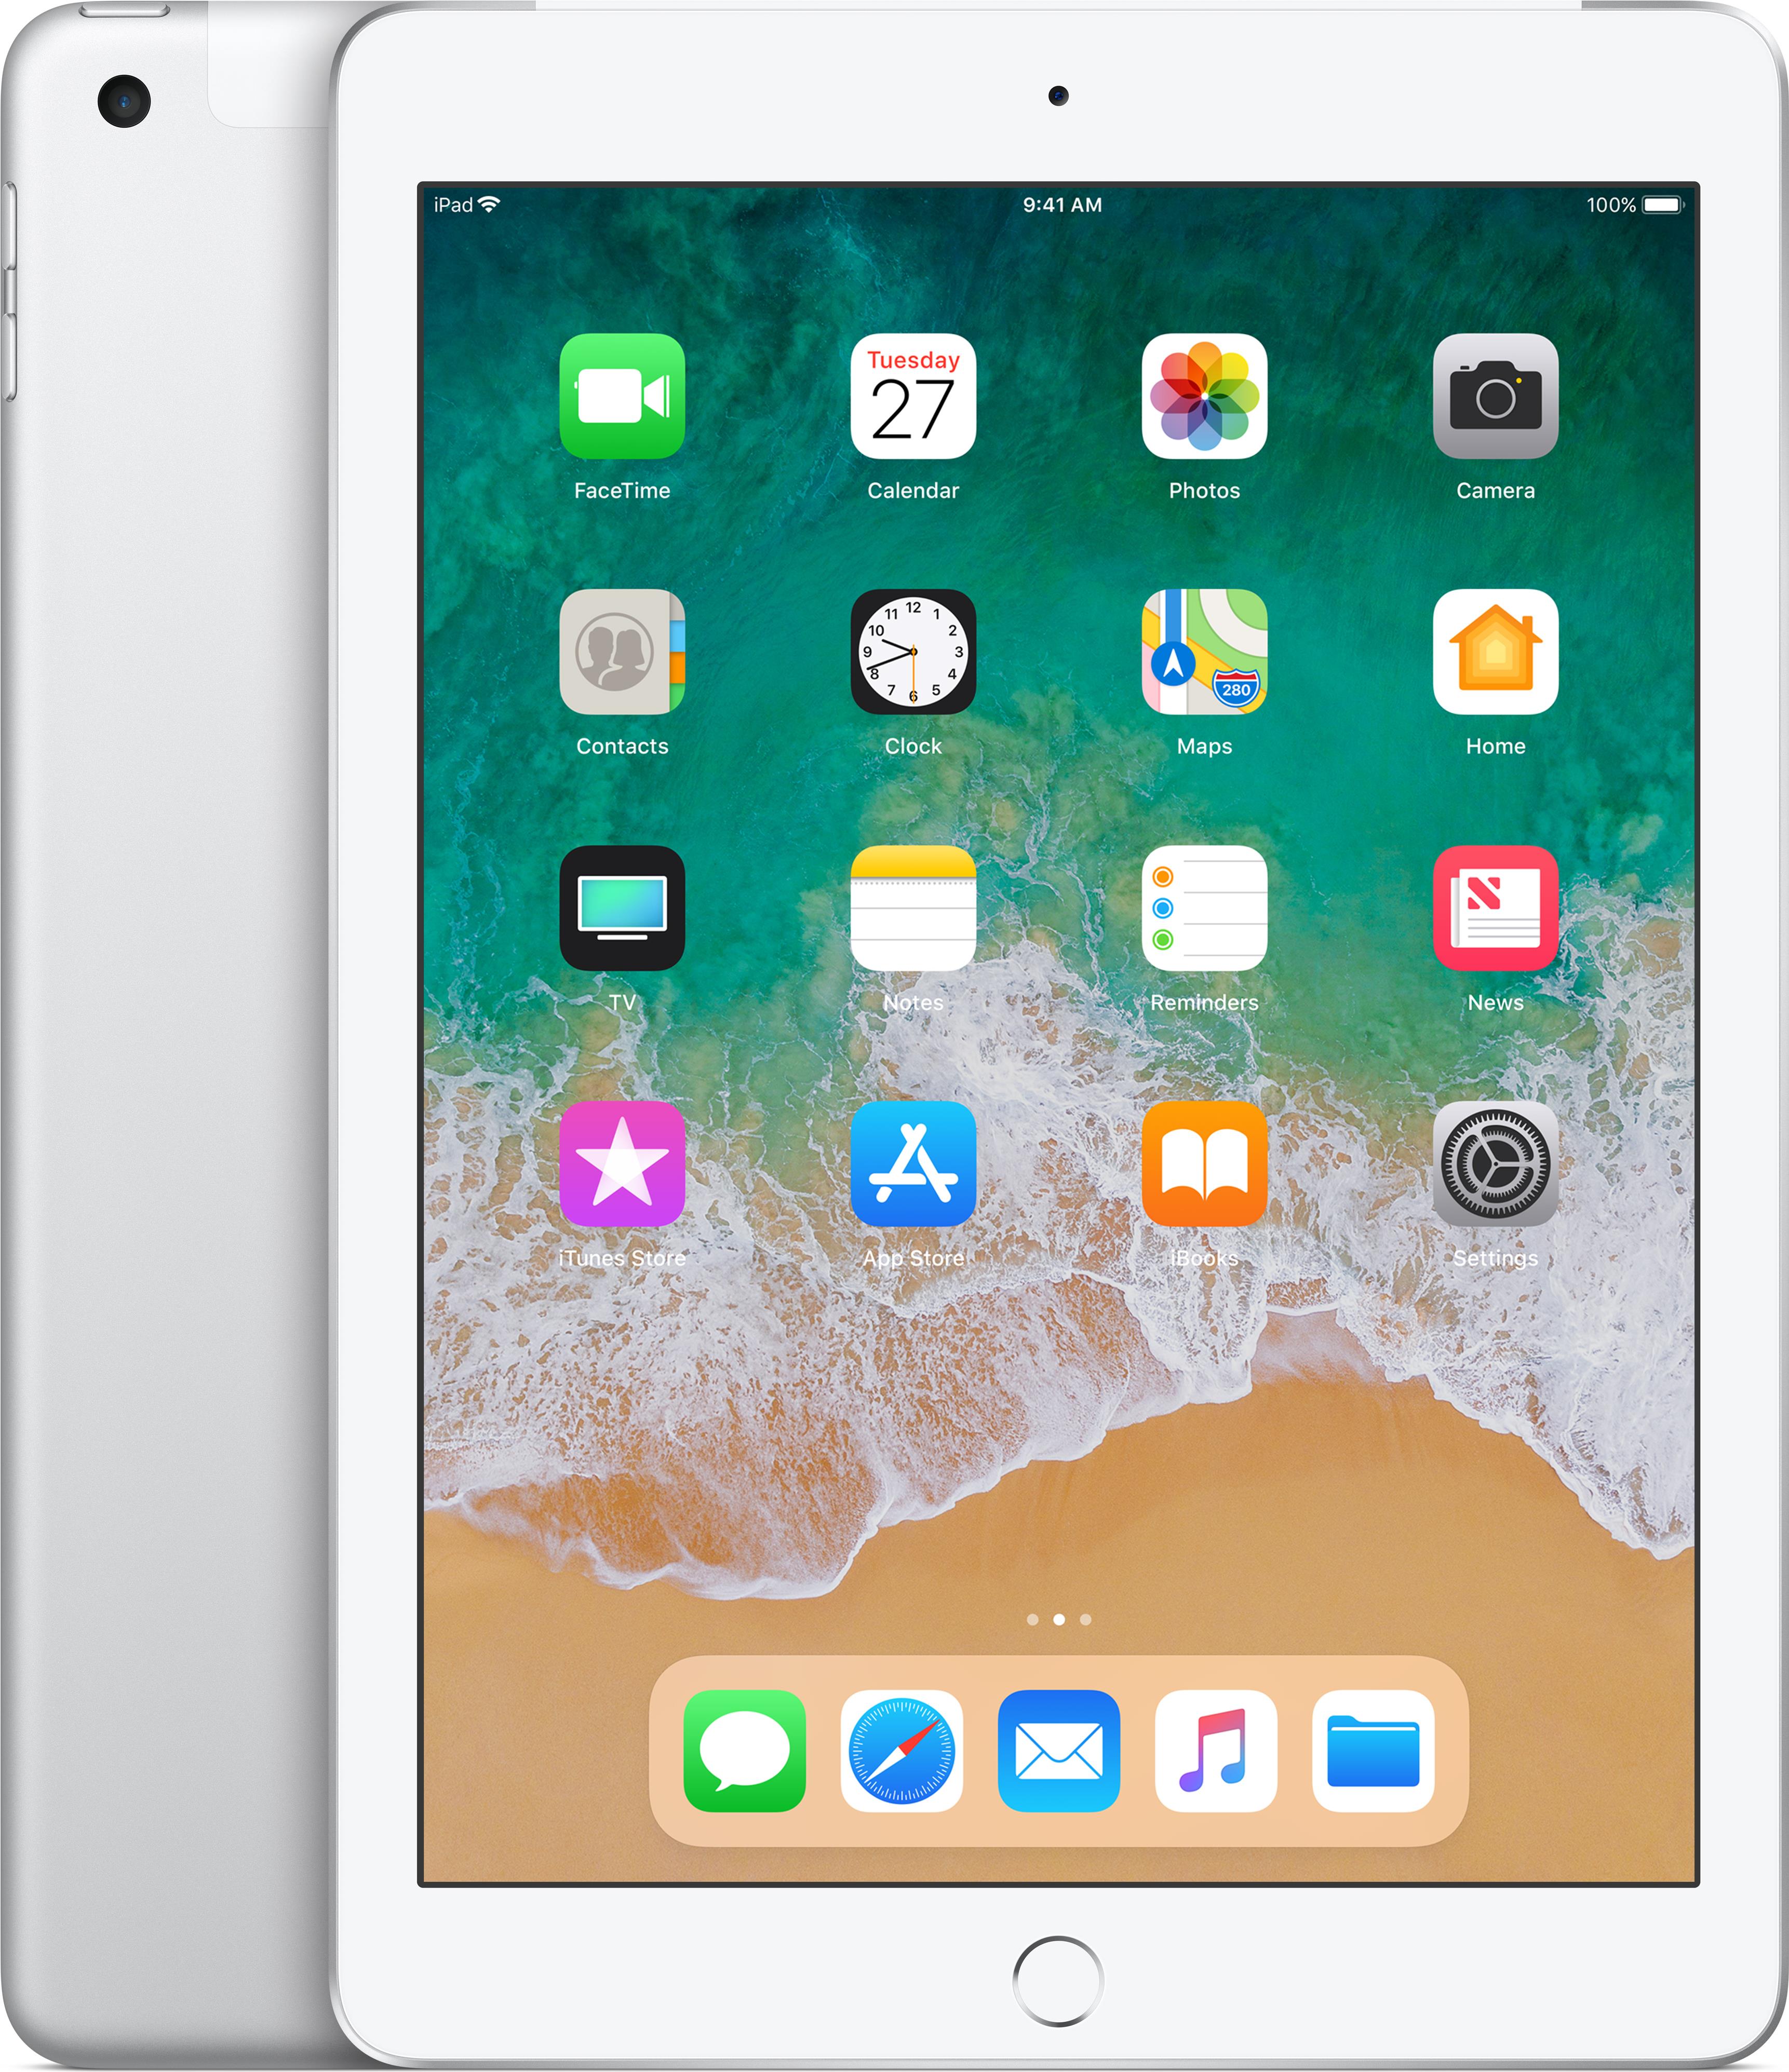 iPad 9,7 Wi-Fi + Cellular 32 GB Silber - Tablet (MR702FD/A)